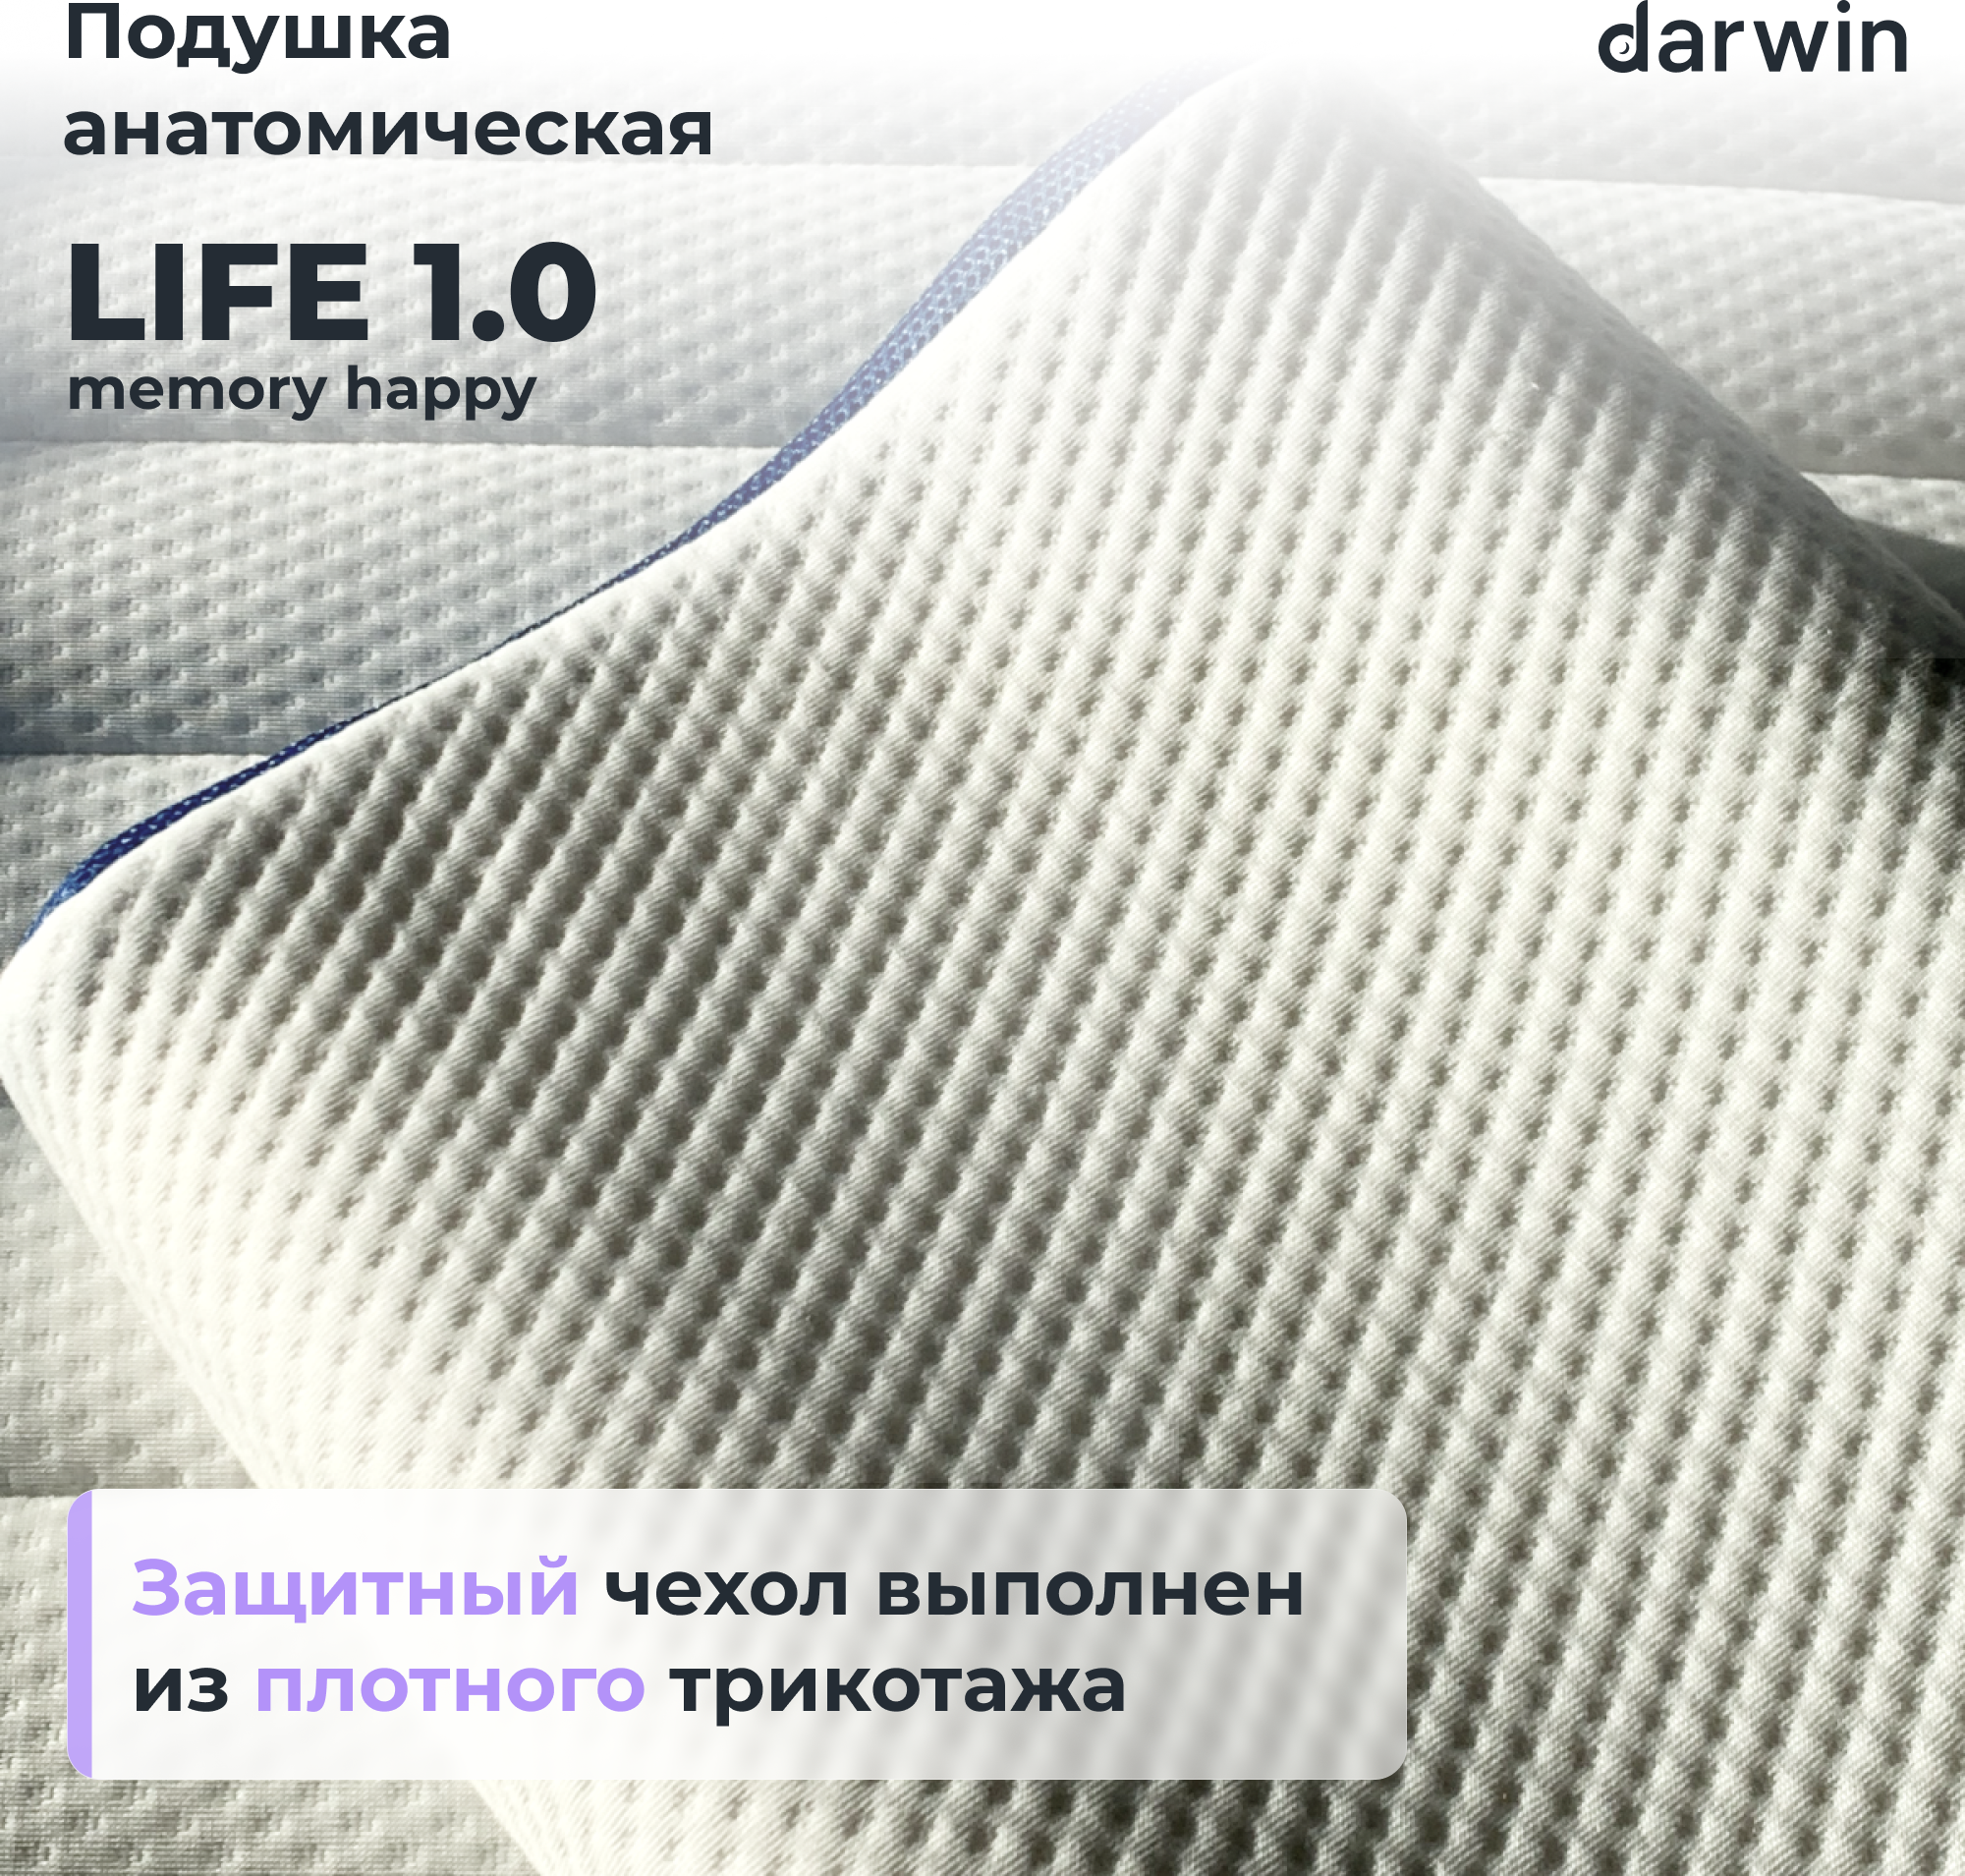 Подушка ортопедическая для сна Darwin Life 1.0 Memory Happy c эффектом памяти, анатомическая, 32х60 см, высота 8/11 см - фотография № 3